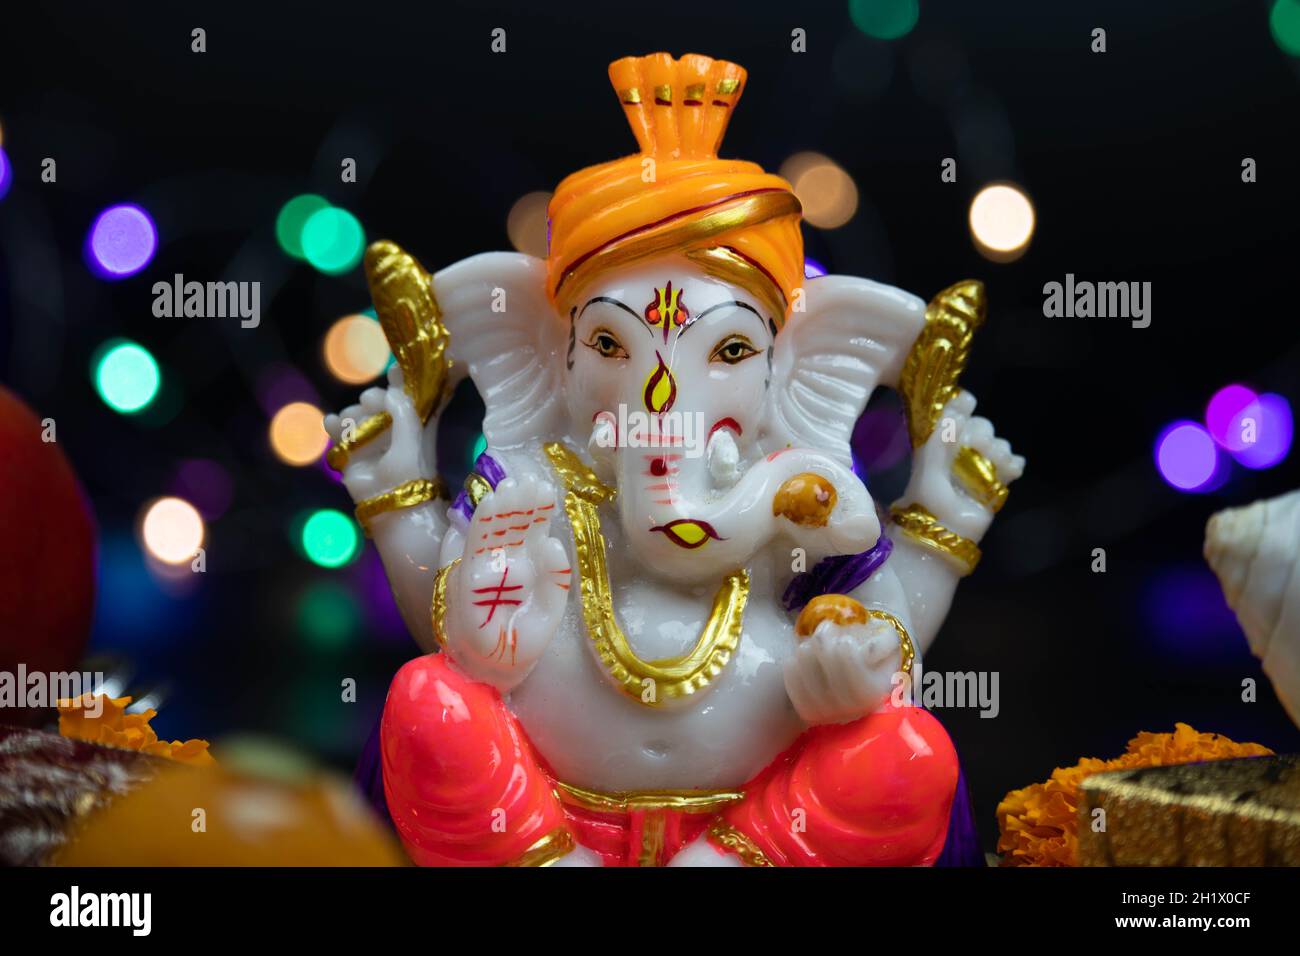 Closeup Of Hindu God Lord Ganesha Ganpati Bappa Morya In Orange ...